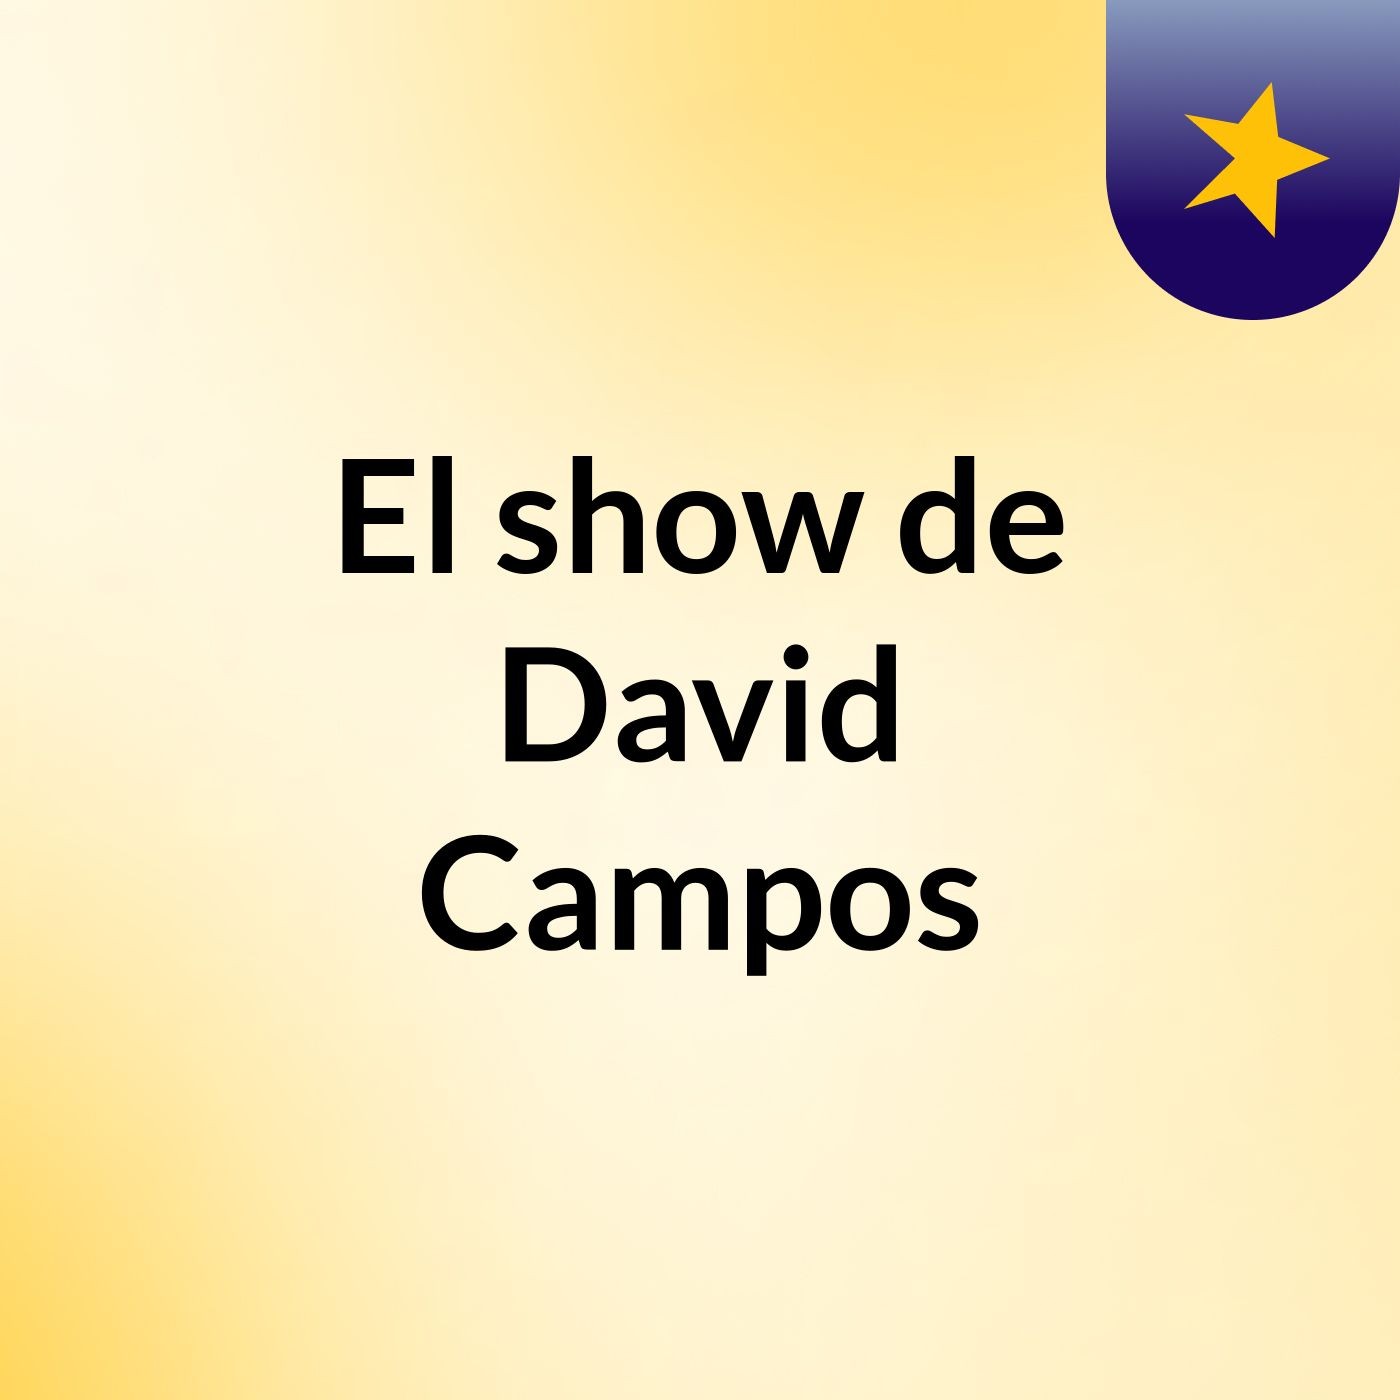 El show de David Campos